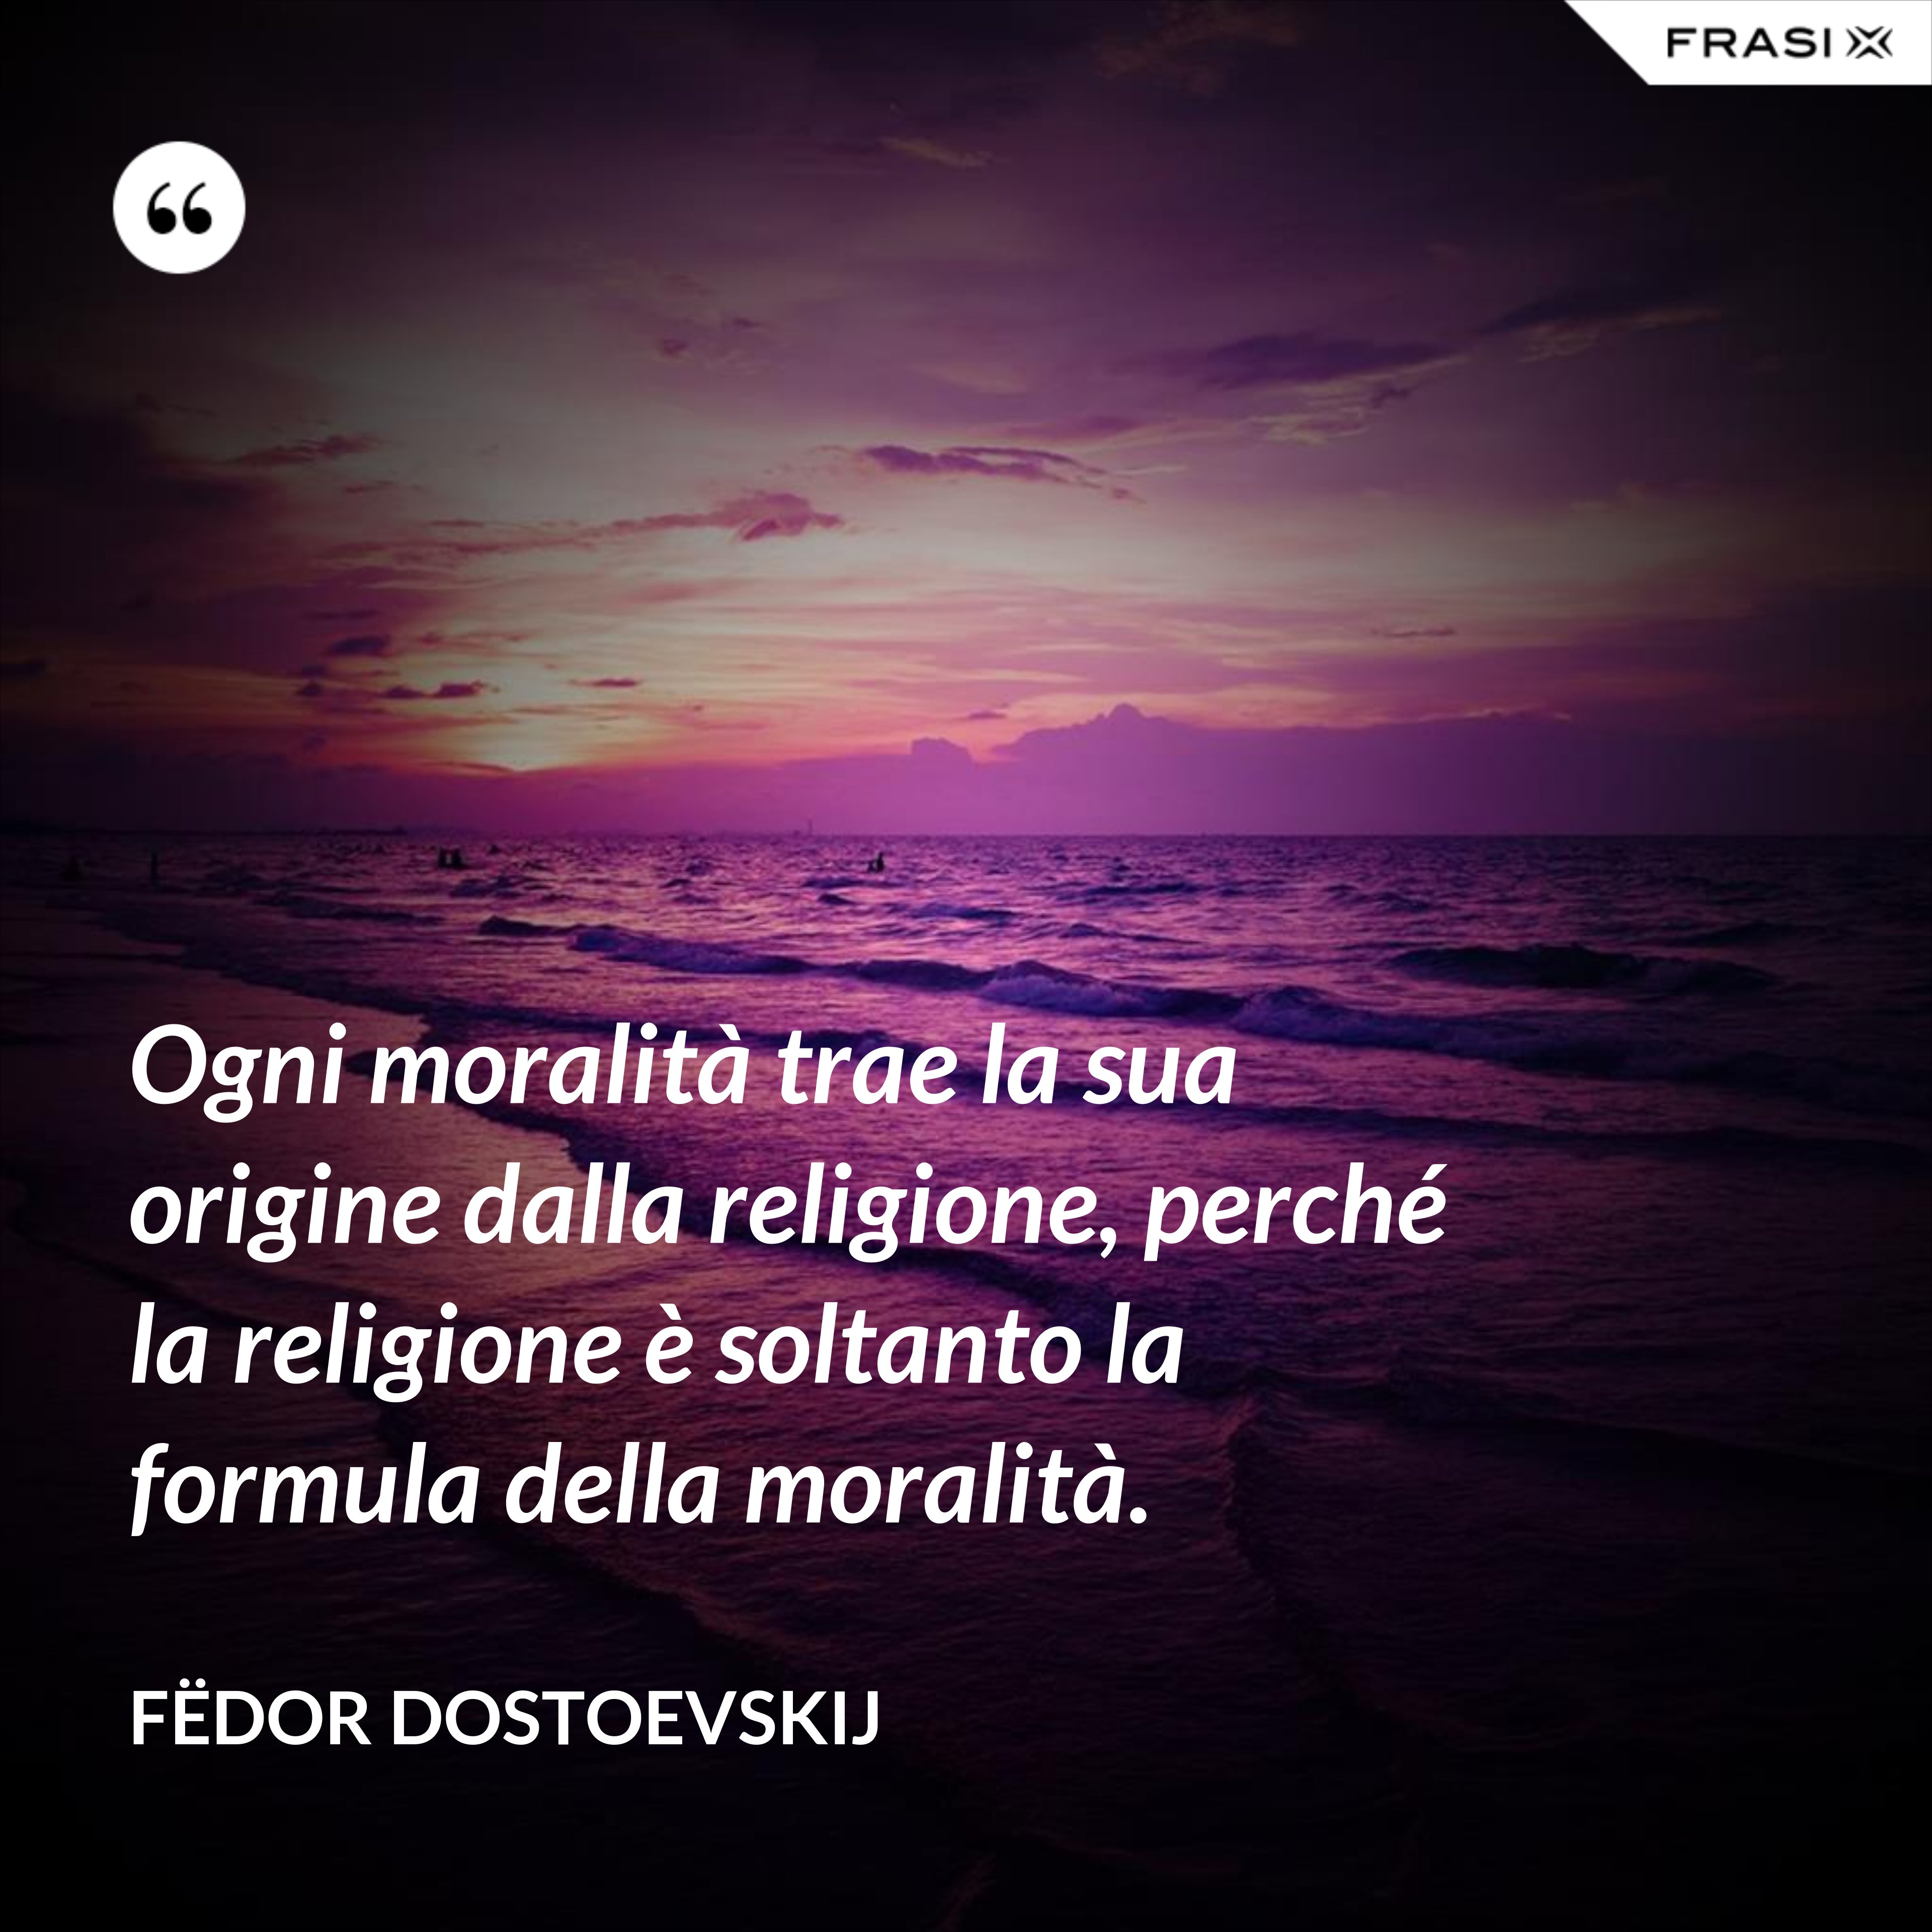 Ogni moralità trae la sua origine dalla religione, perché la religione è soltanto la formula della moralità. - Fëdor Dostoevskij